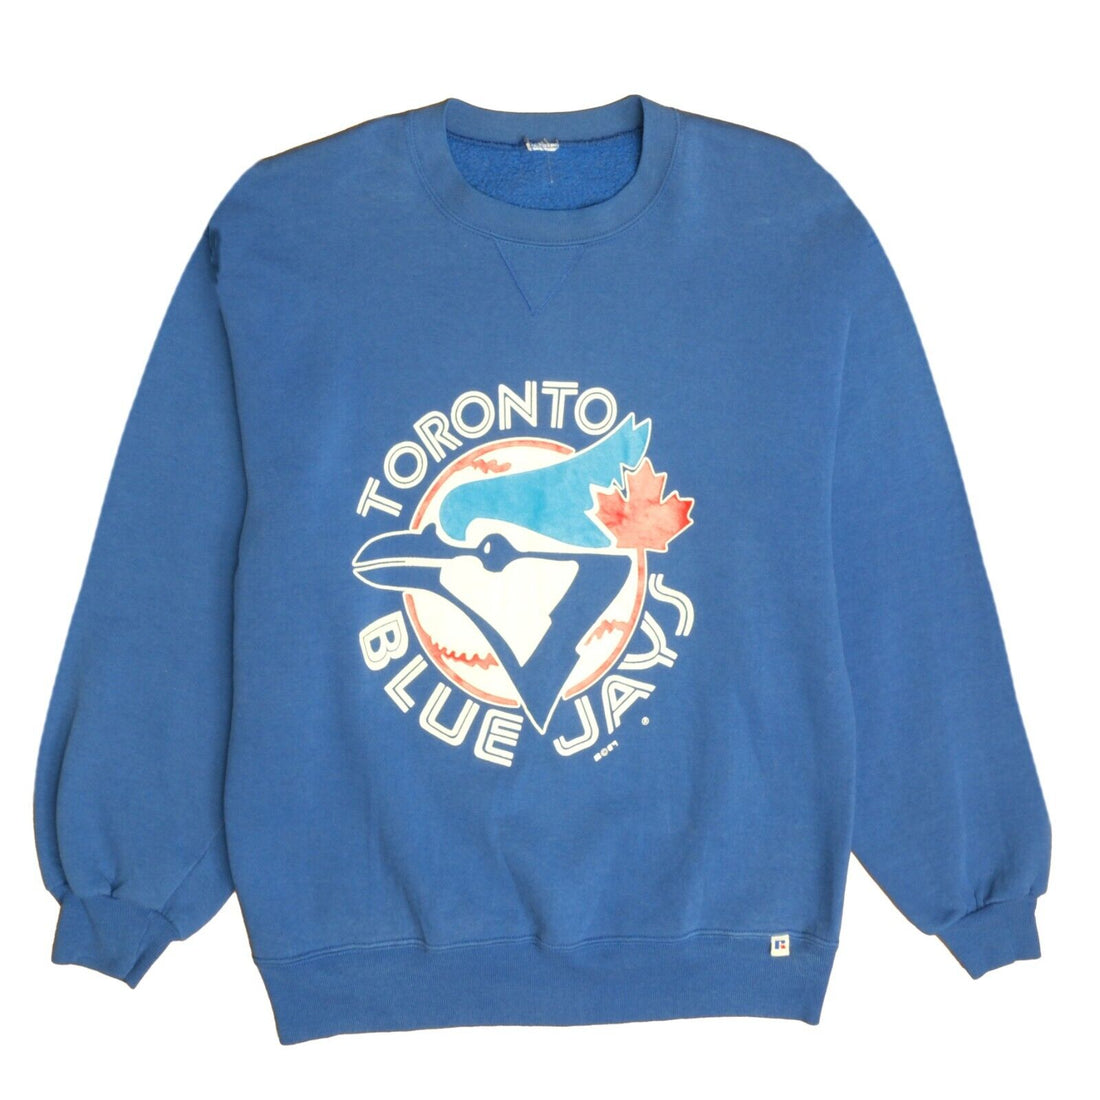 Vintage Toronto Blue Jays Russell Athletic Sweatshirt Crewneck Large 90s MLB